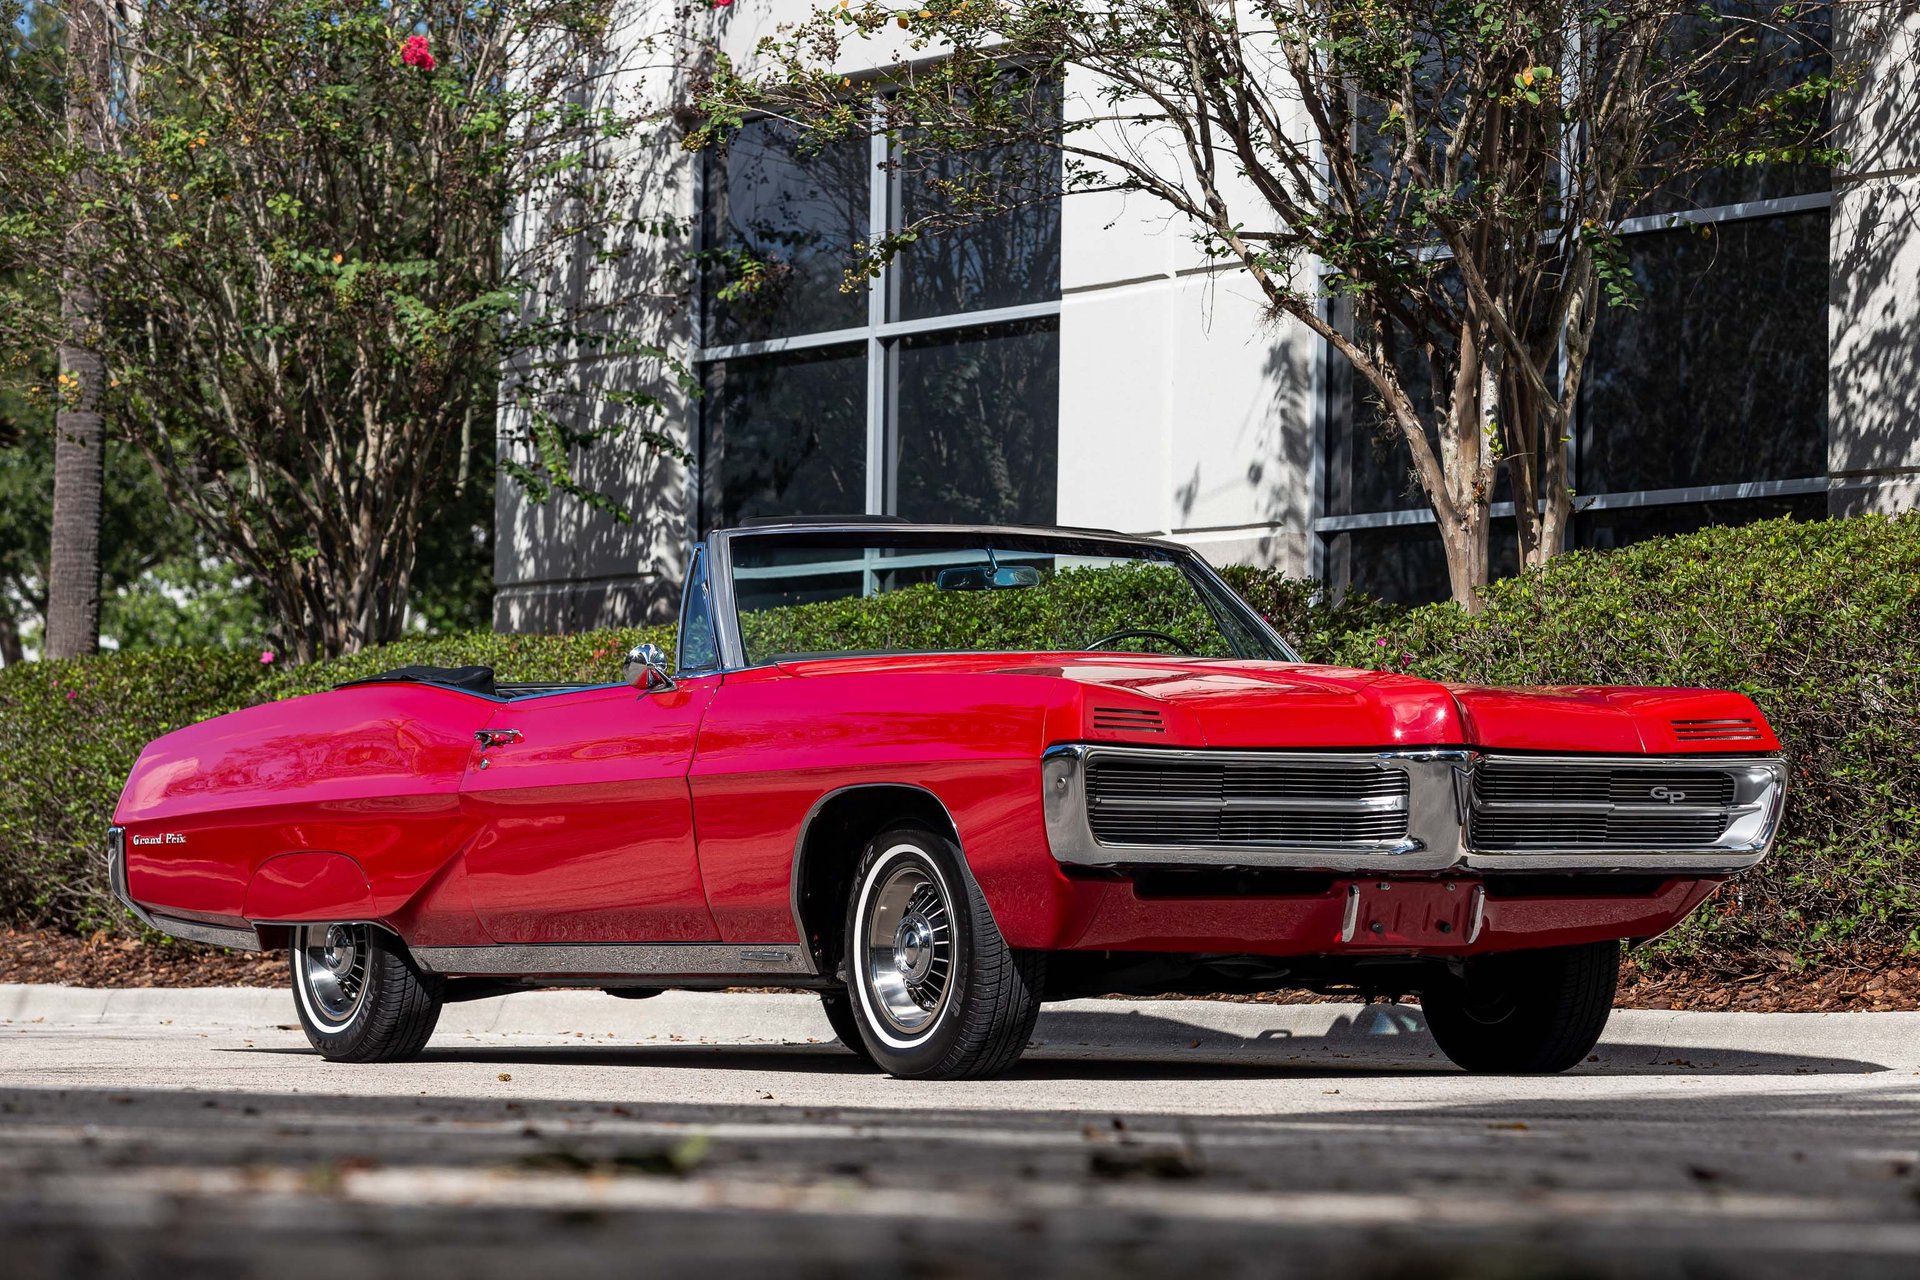 Pontiac gp 1967 earn to die 2